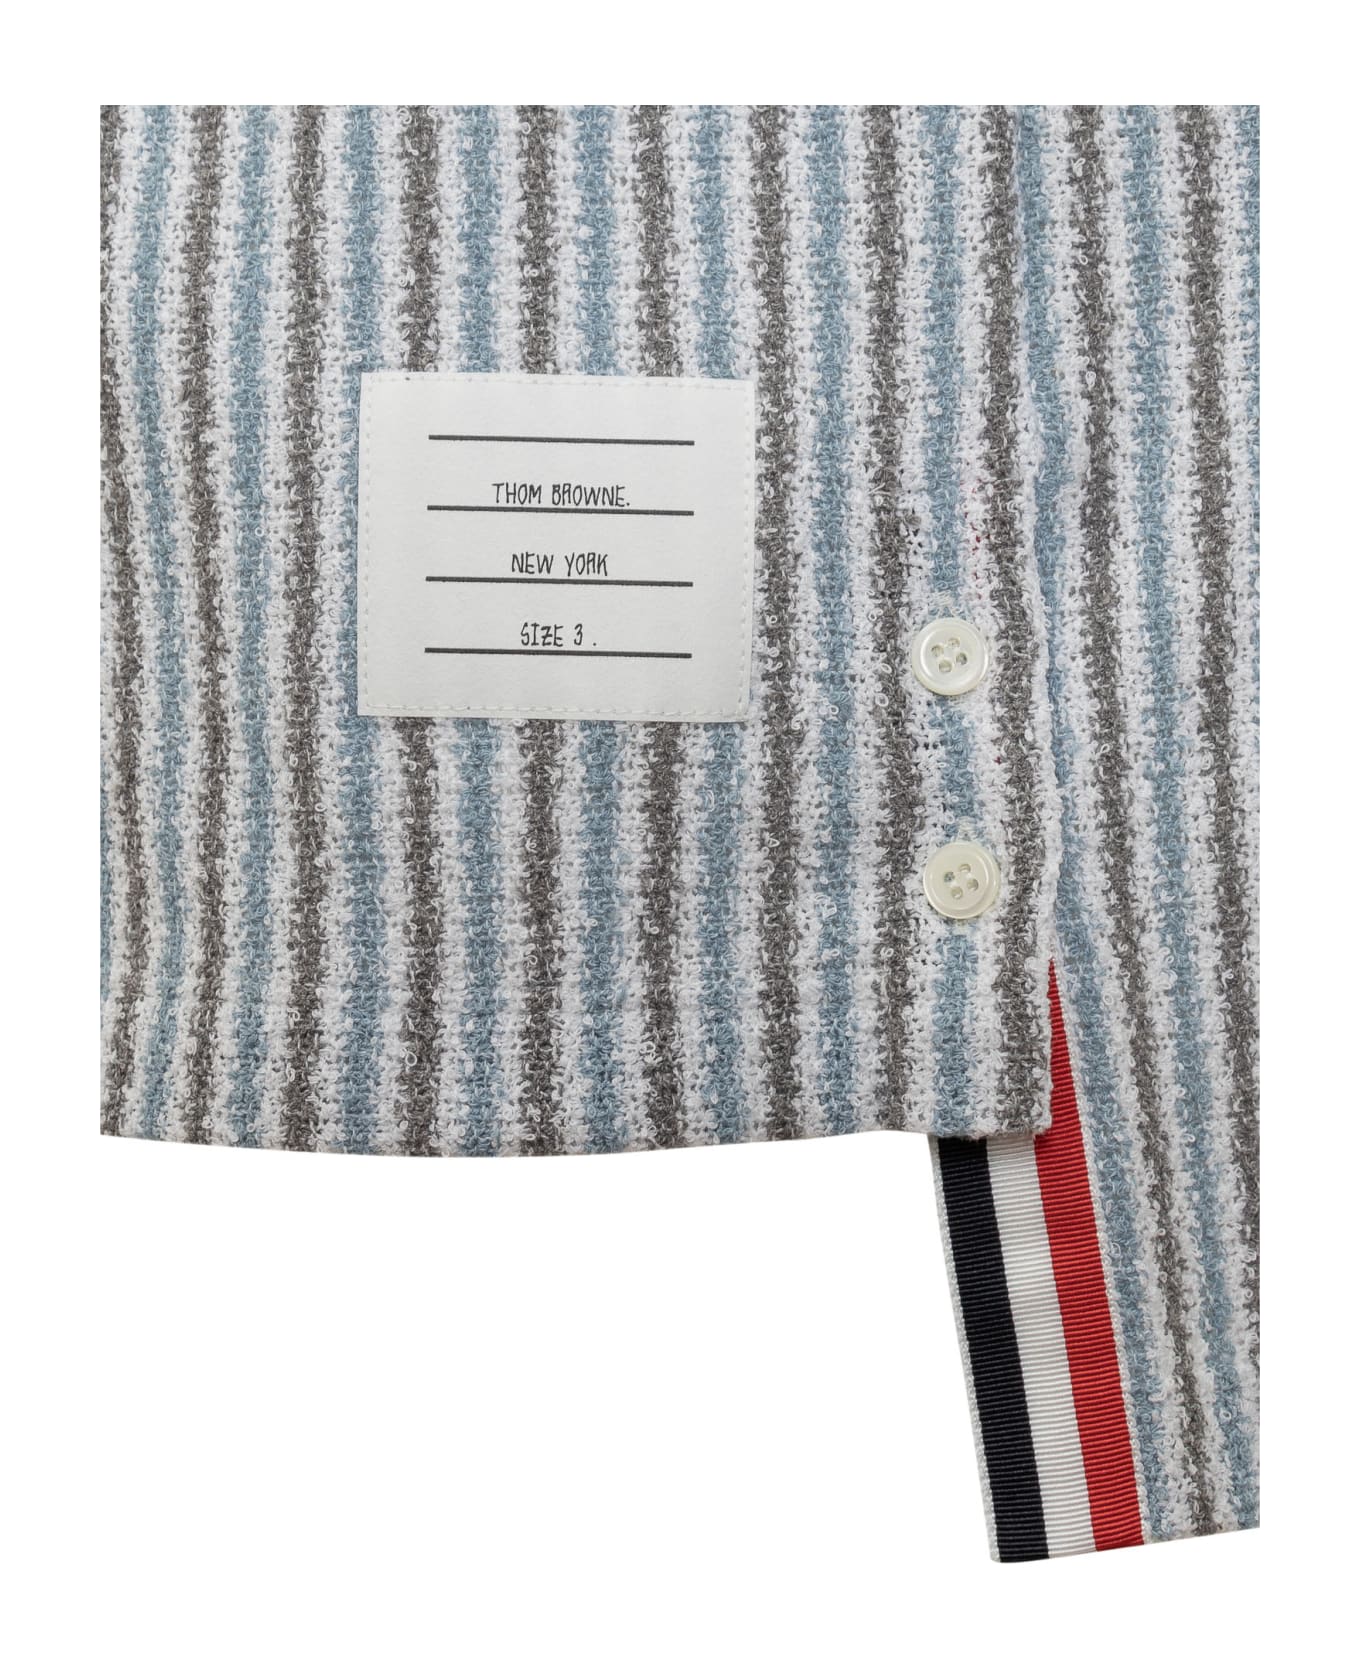 Thom Browne Rwb Striped Shirt - SEASONAL MULTI シャツ